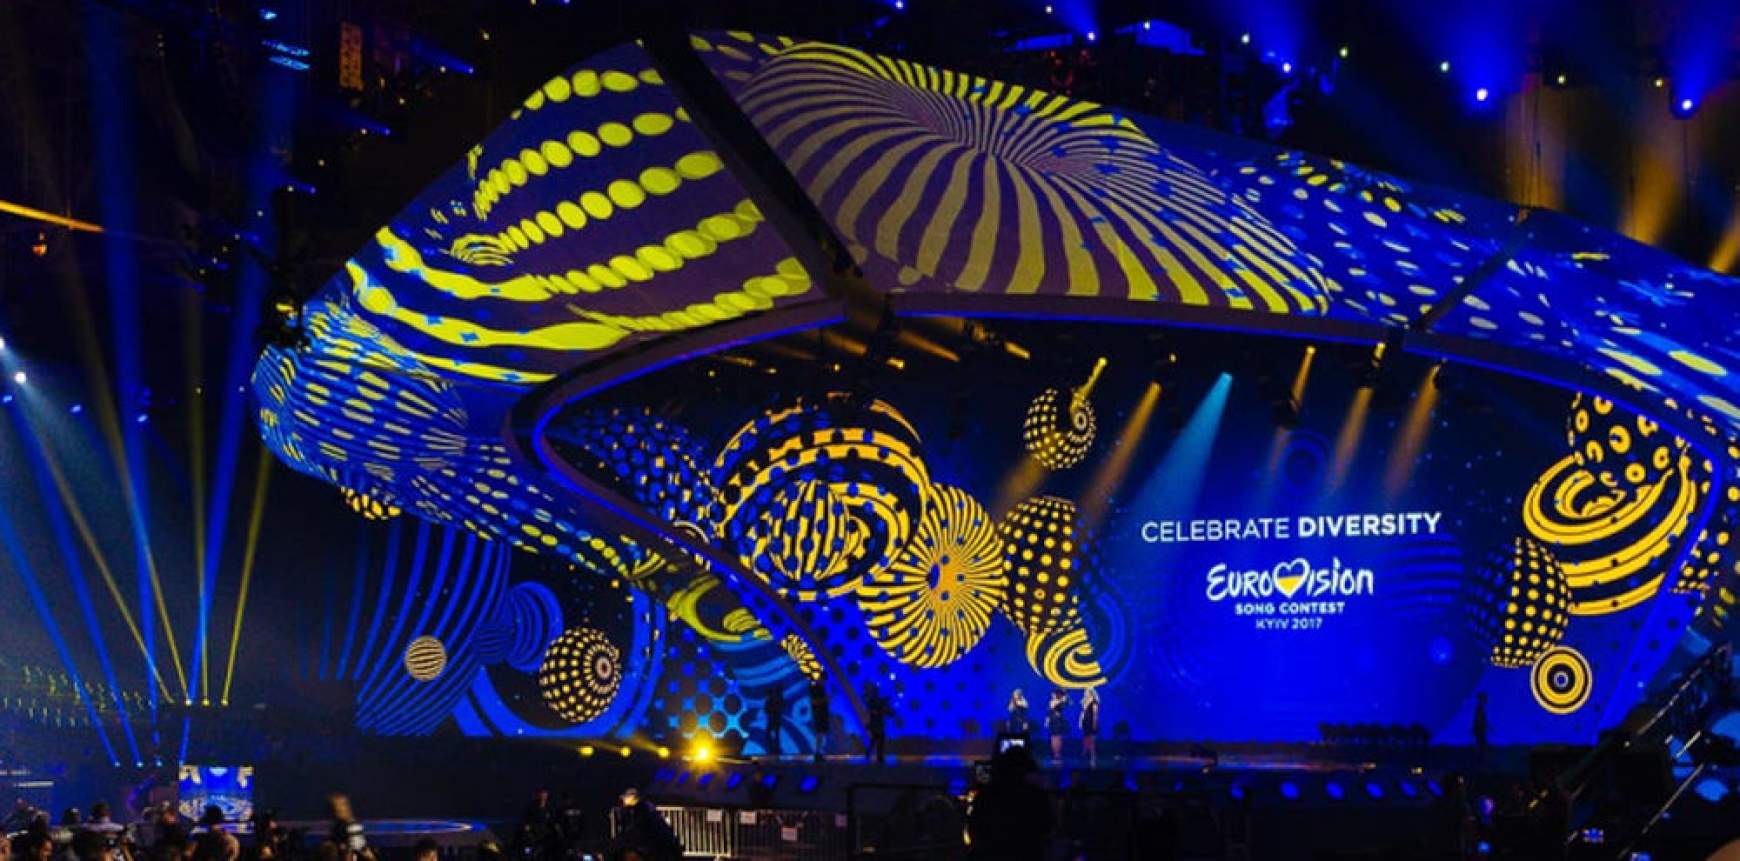 201705101121380.stage_eurovision_kiev_2017.jpg